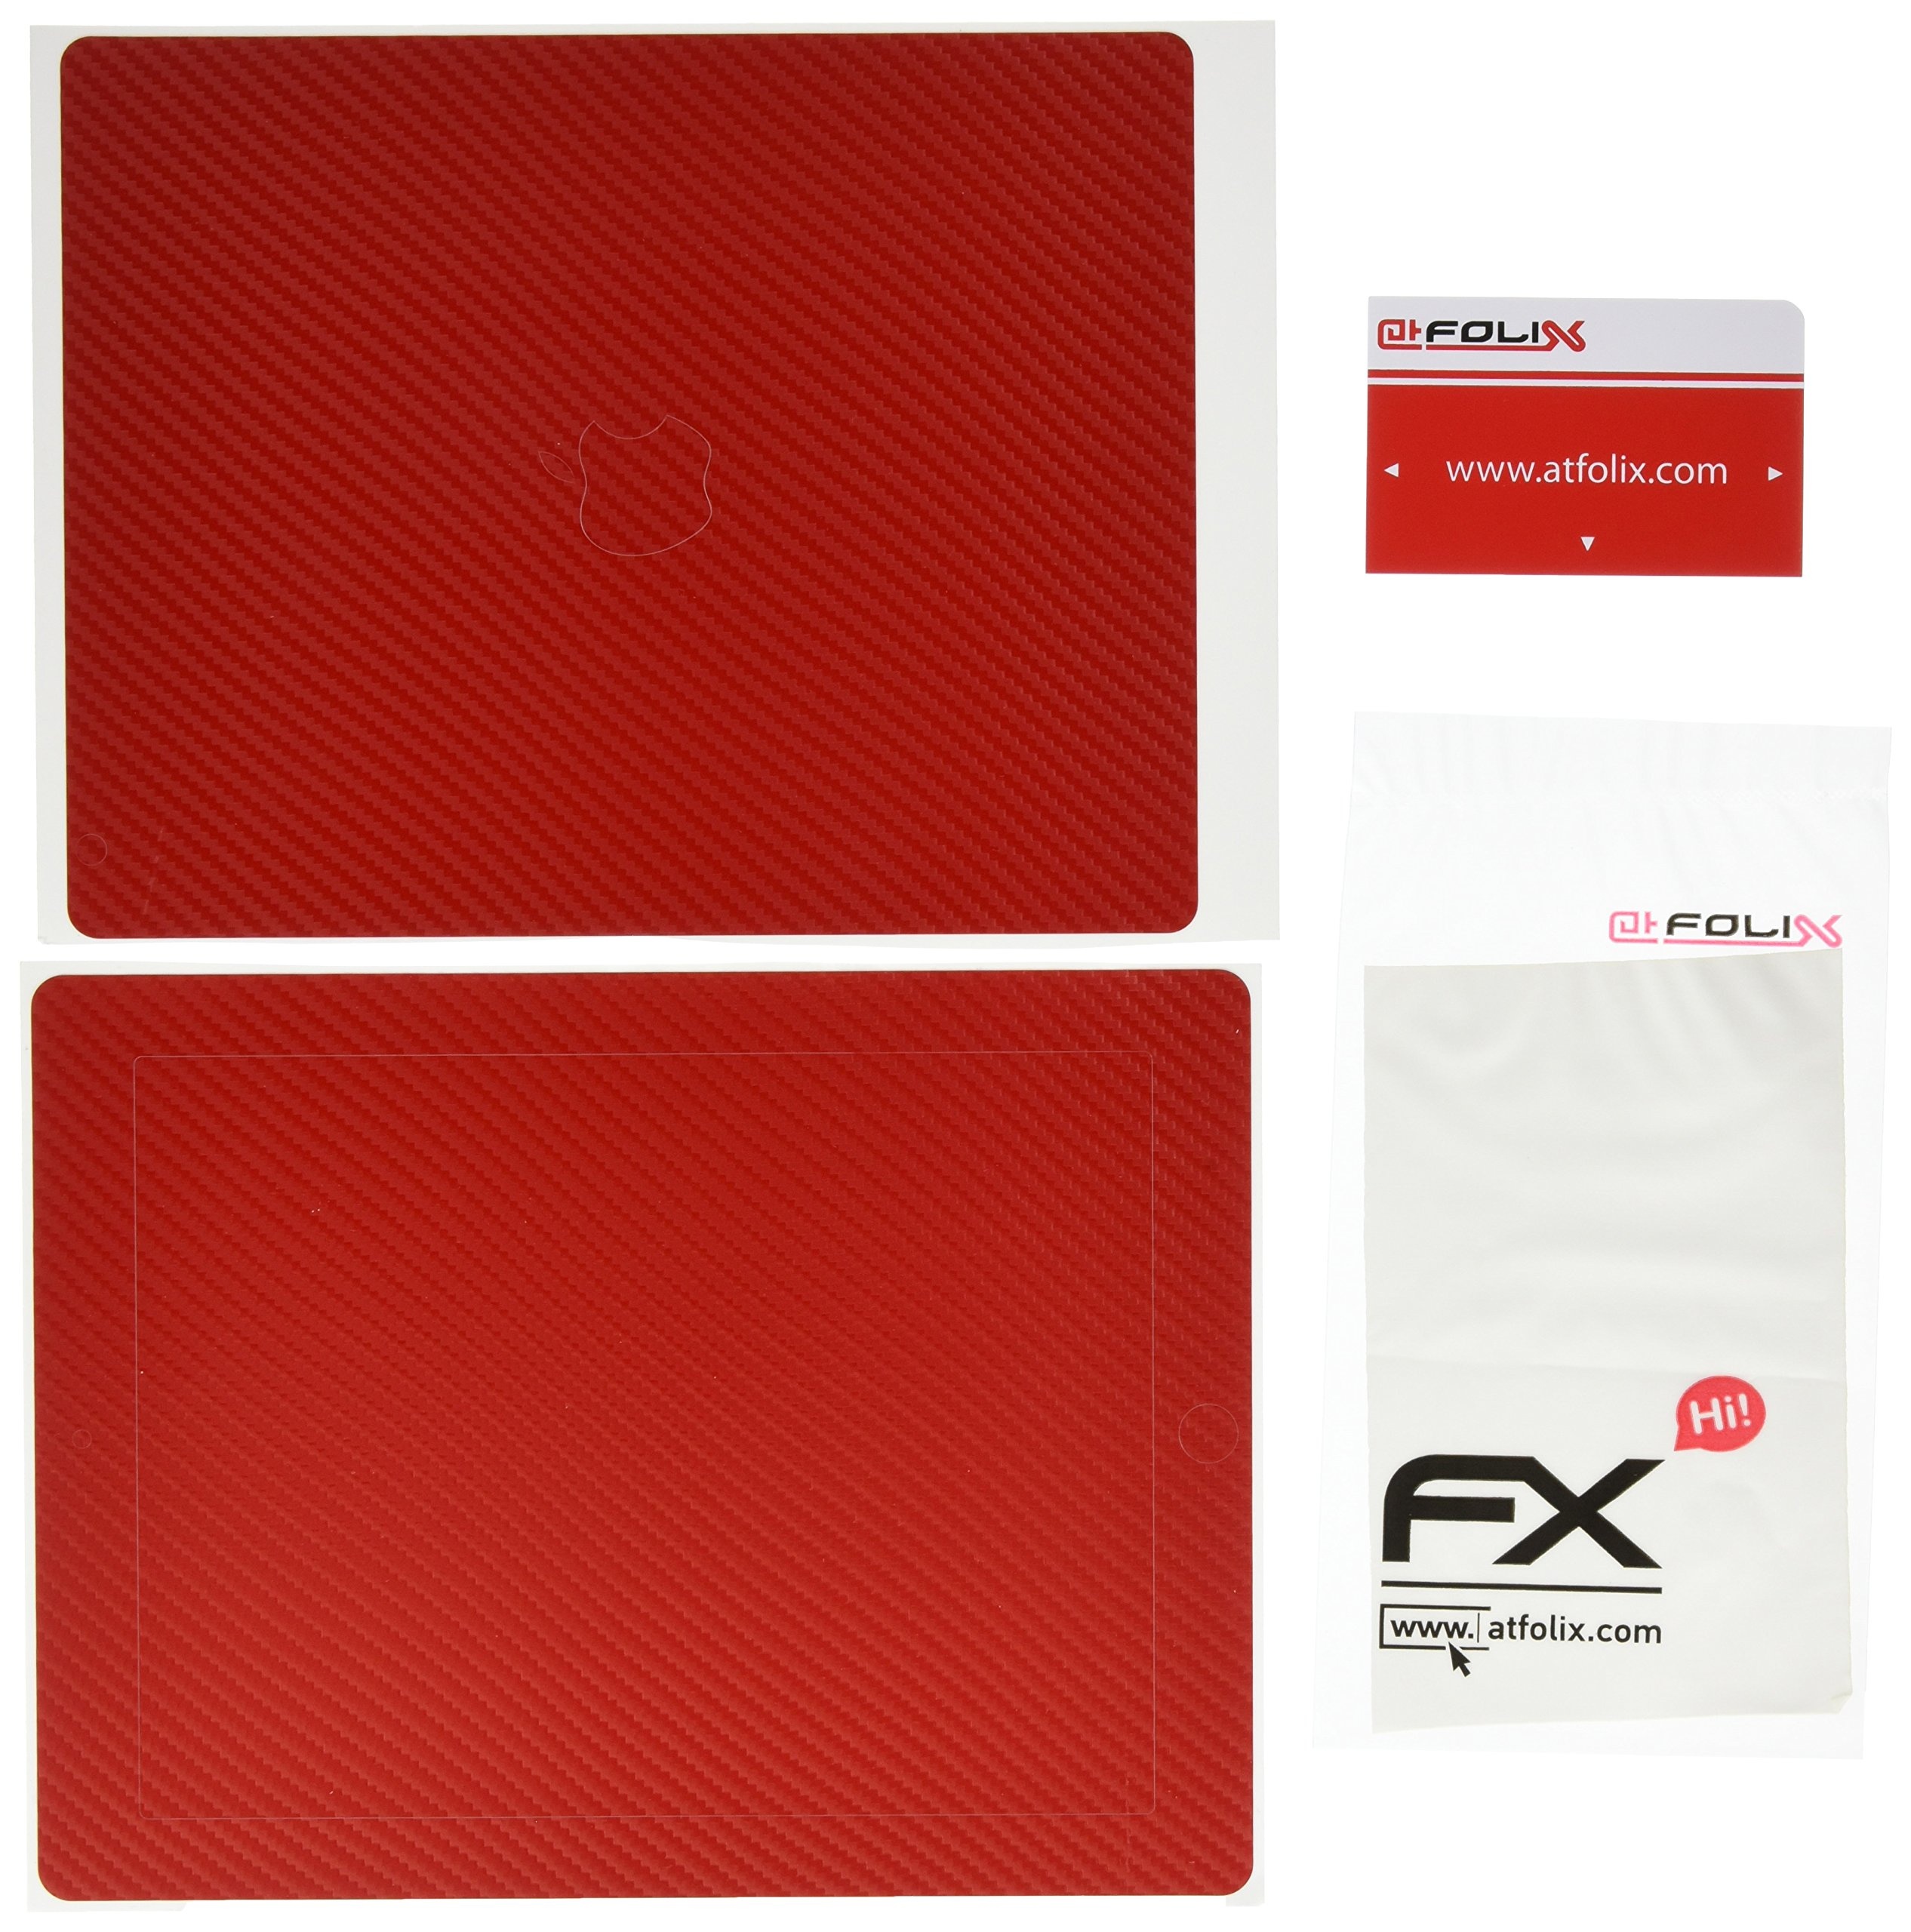 atFoliX FX-Carbon-Red Designfolie für Apple iPad 4/3/2